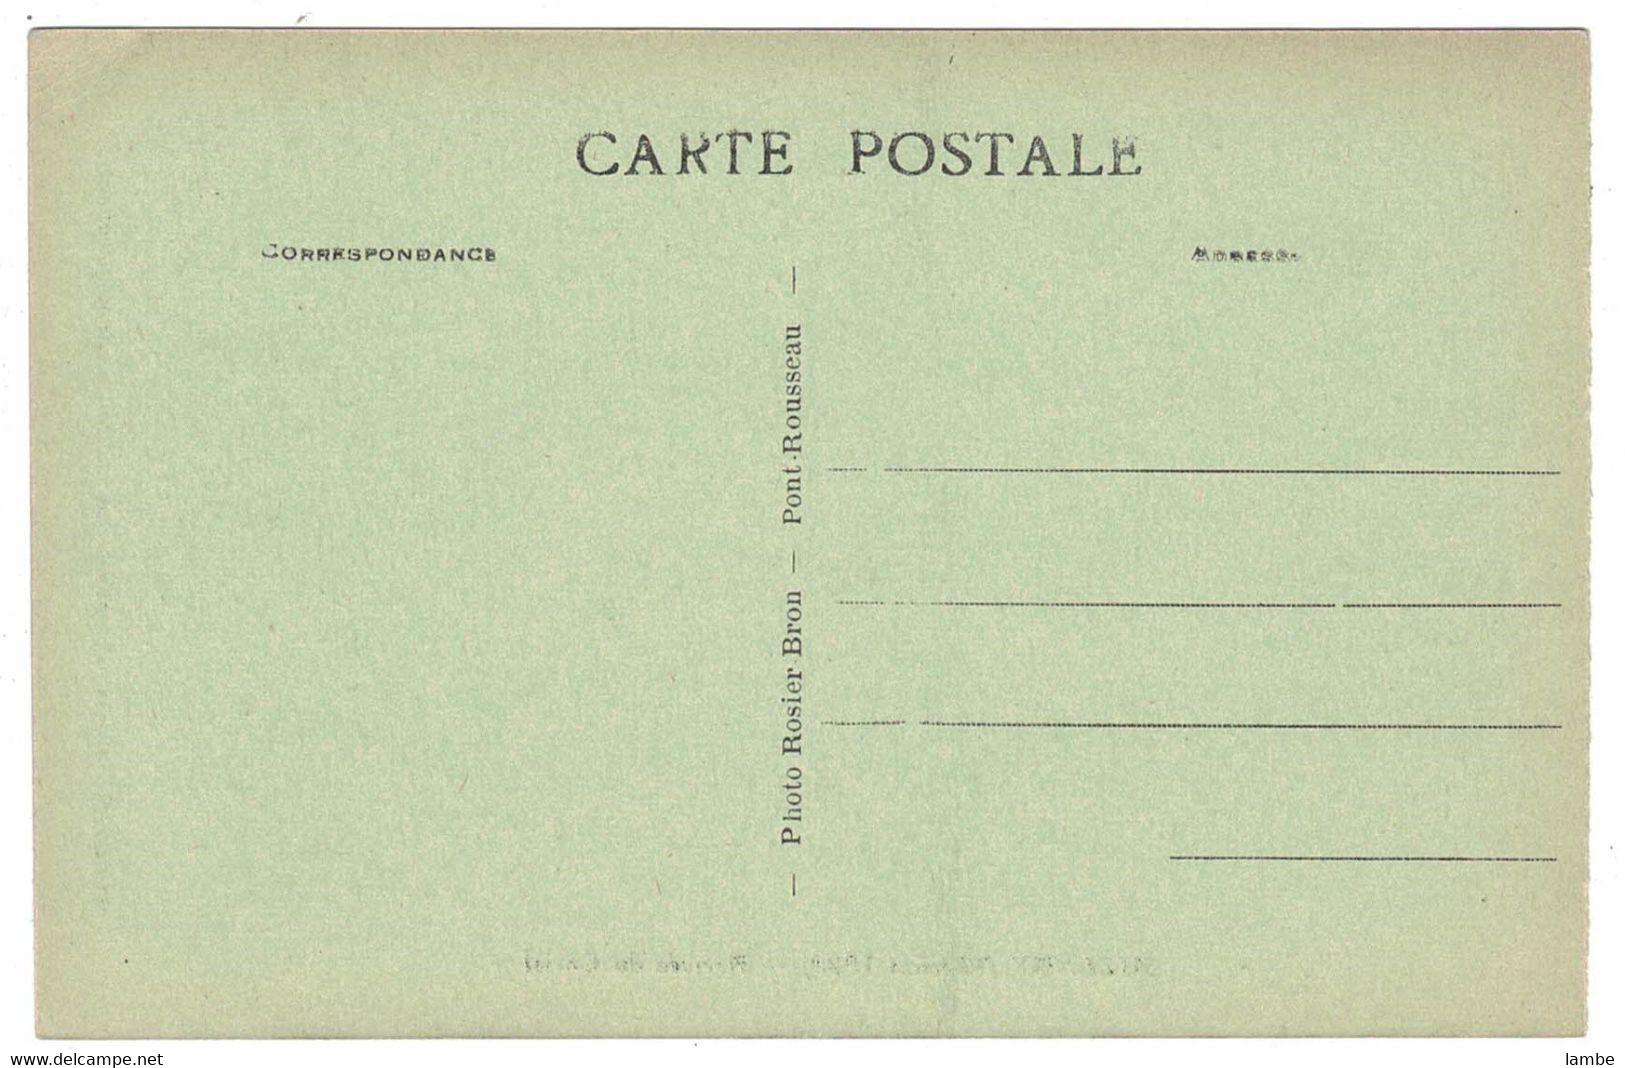 AIZENAY - Mission 1929 - 10 cartes postales - état divers ( voir note )